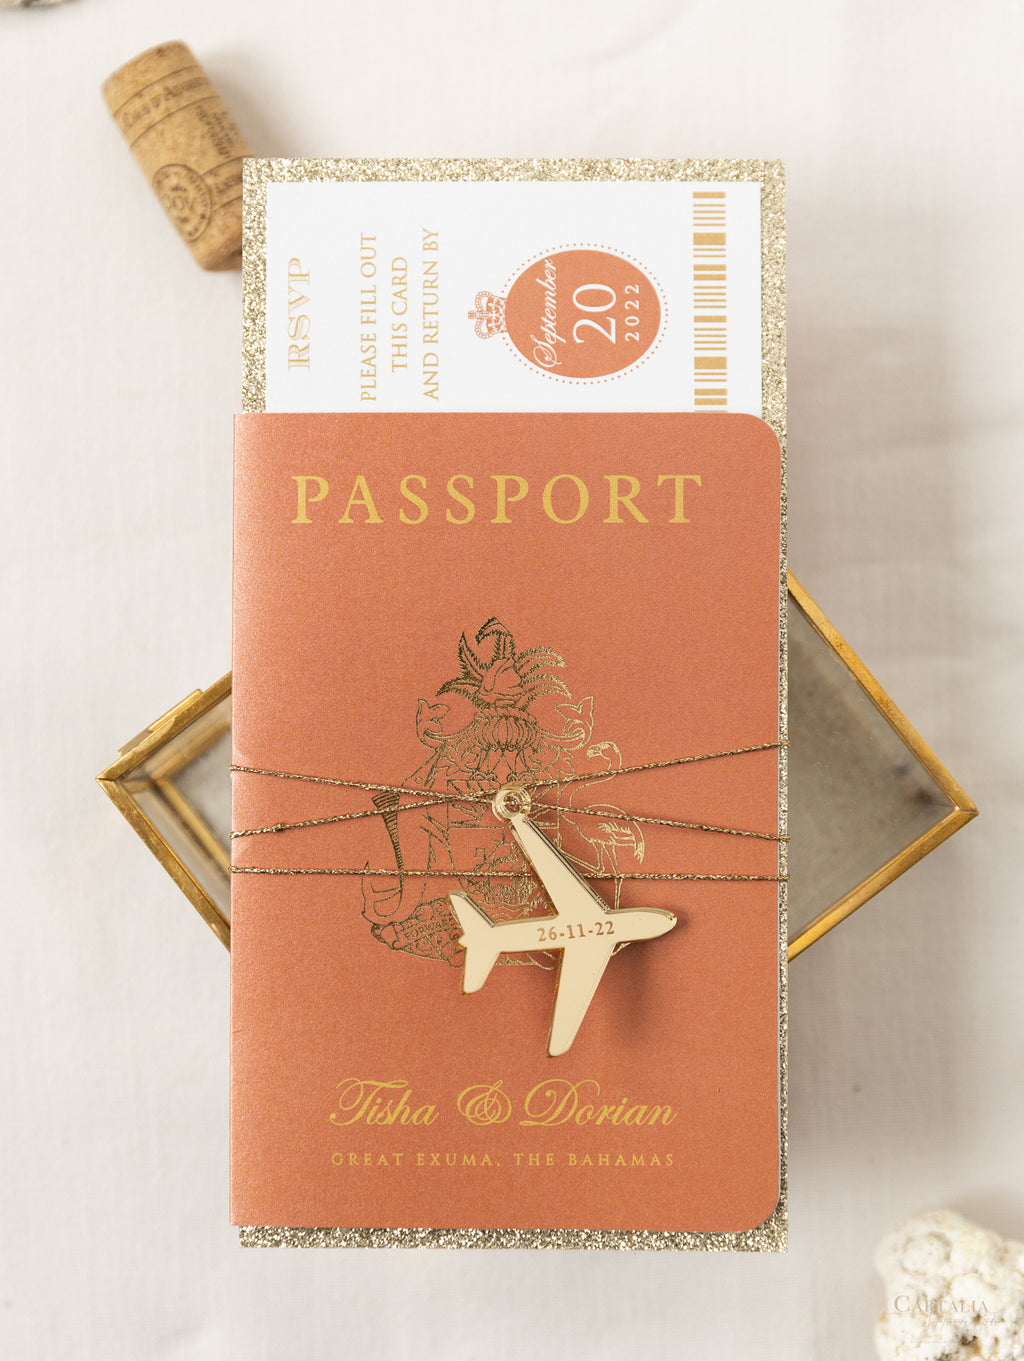 Acheter Couverture de passeport Laser, porte-passeport